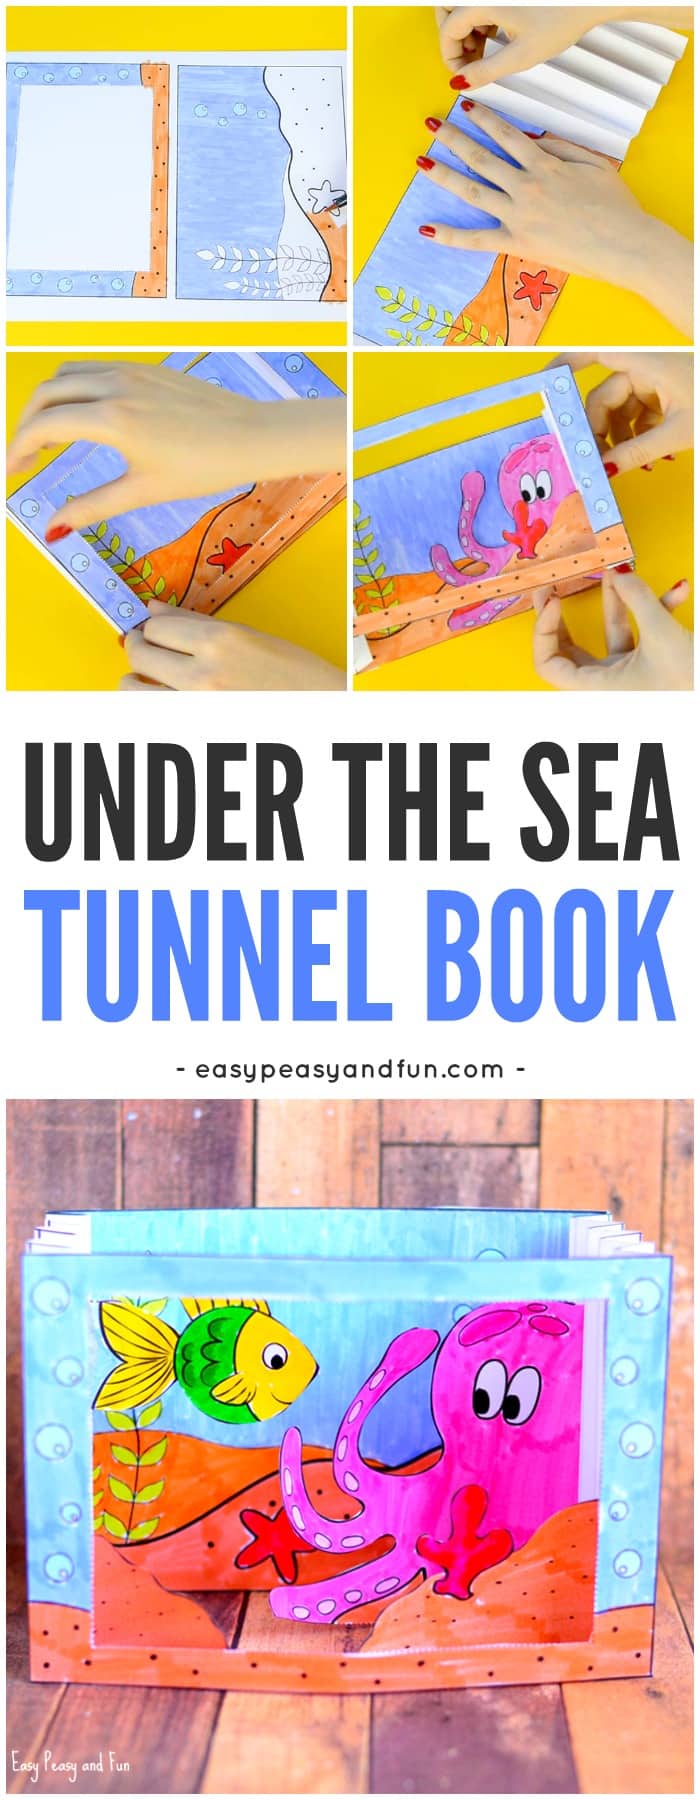 Under the Sea Tunnel Book